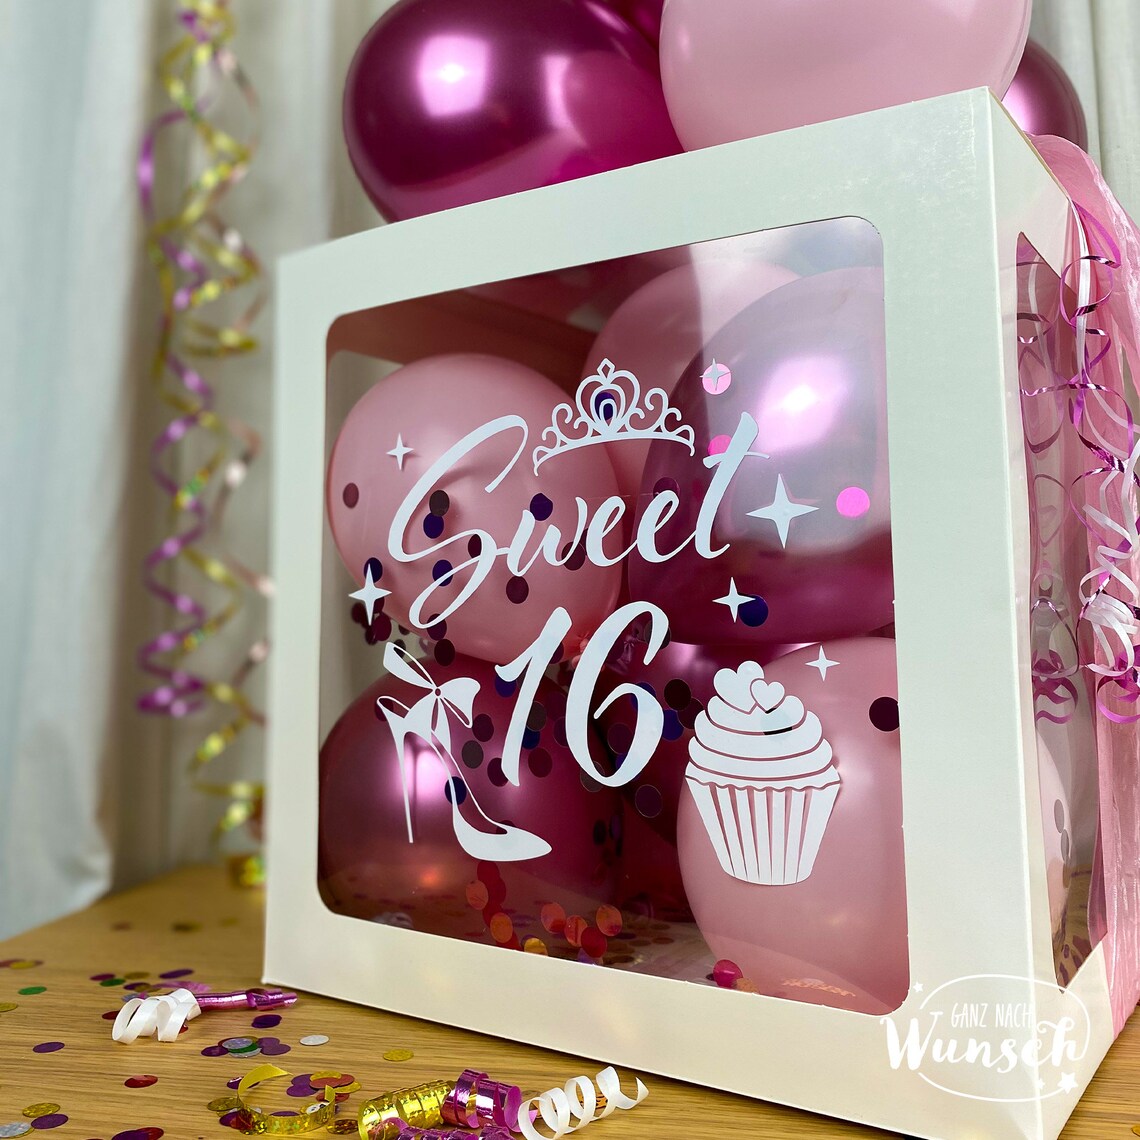 Geschenkbox für Mädchen mit Ballons zum Geburtstag, Personalisierte Dekoration, Kreative Luftballonverpackung, Einzigartige Erinnerung